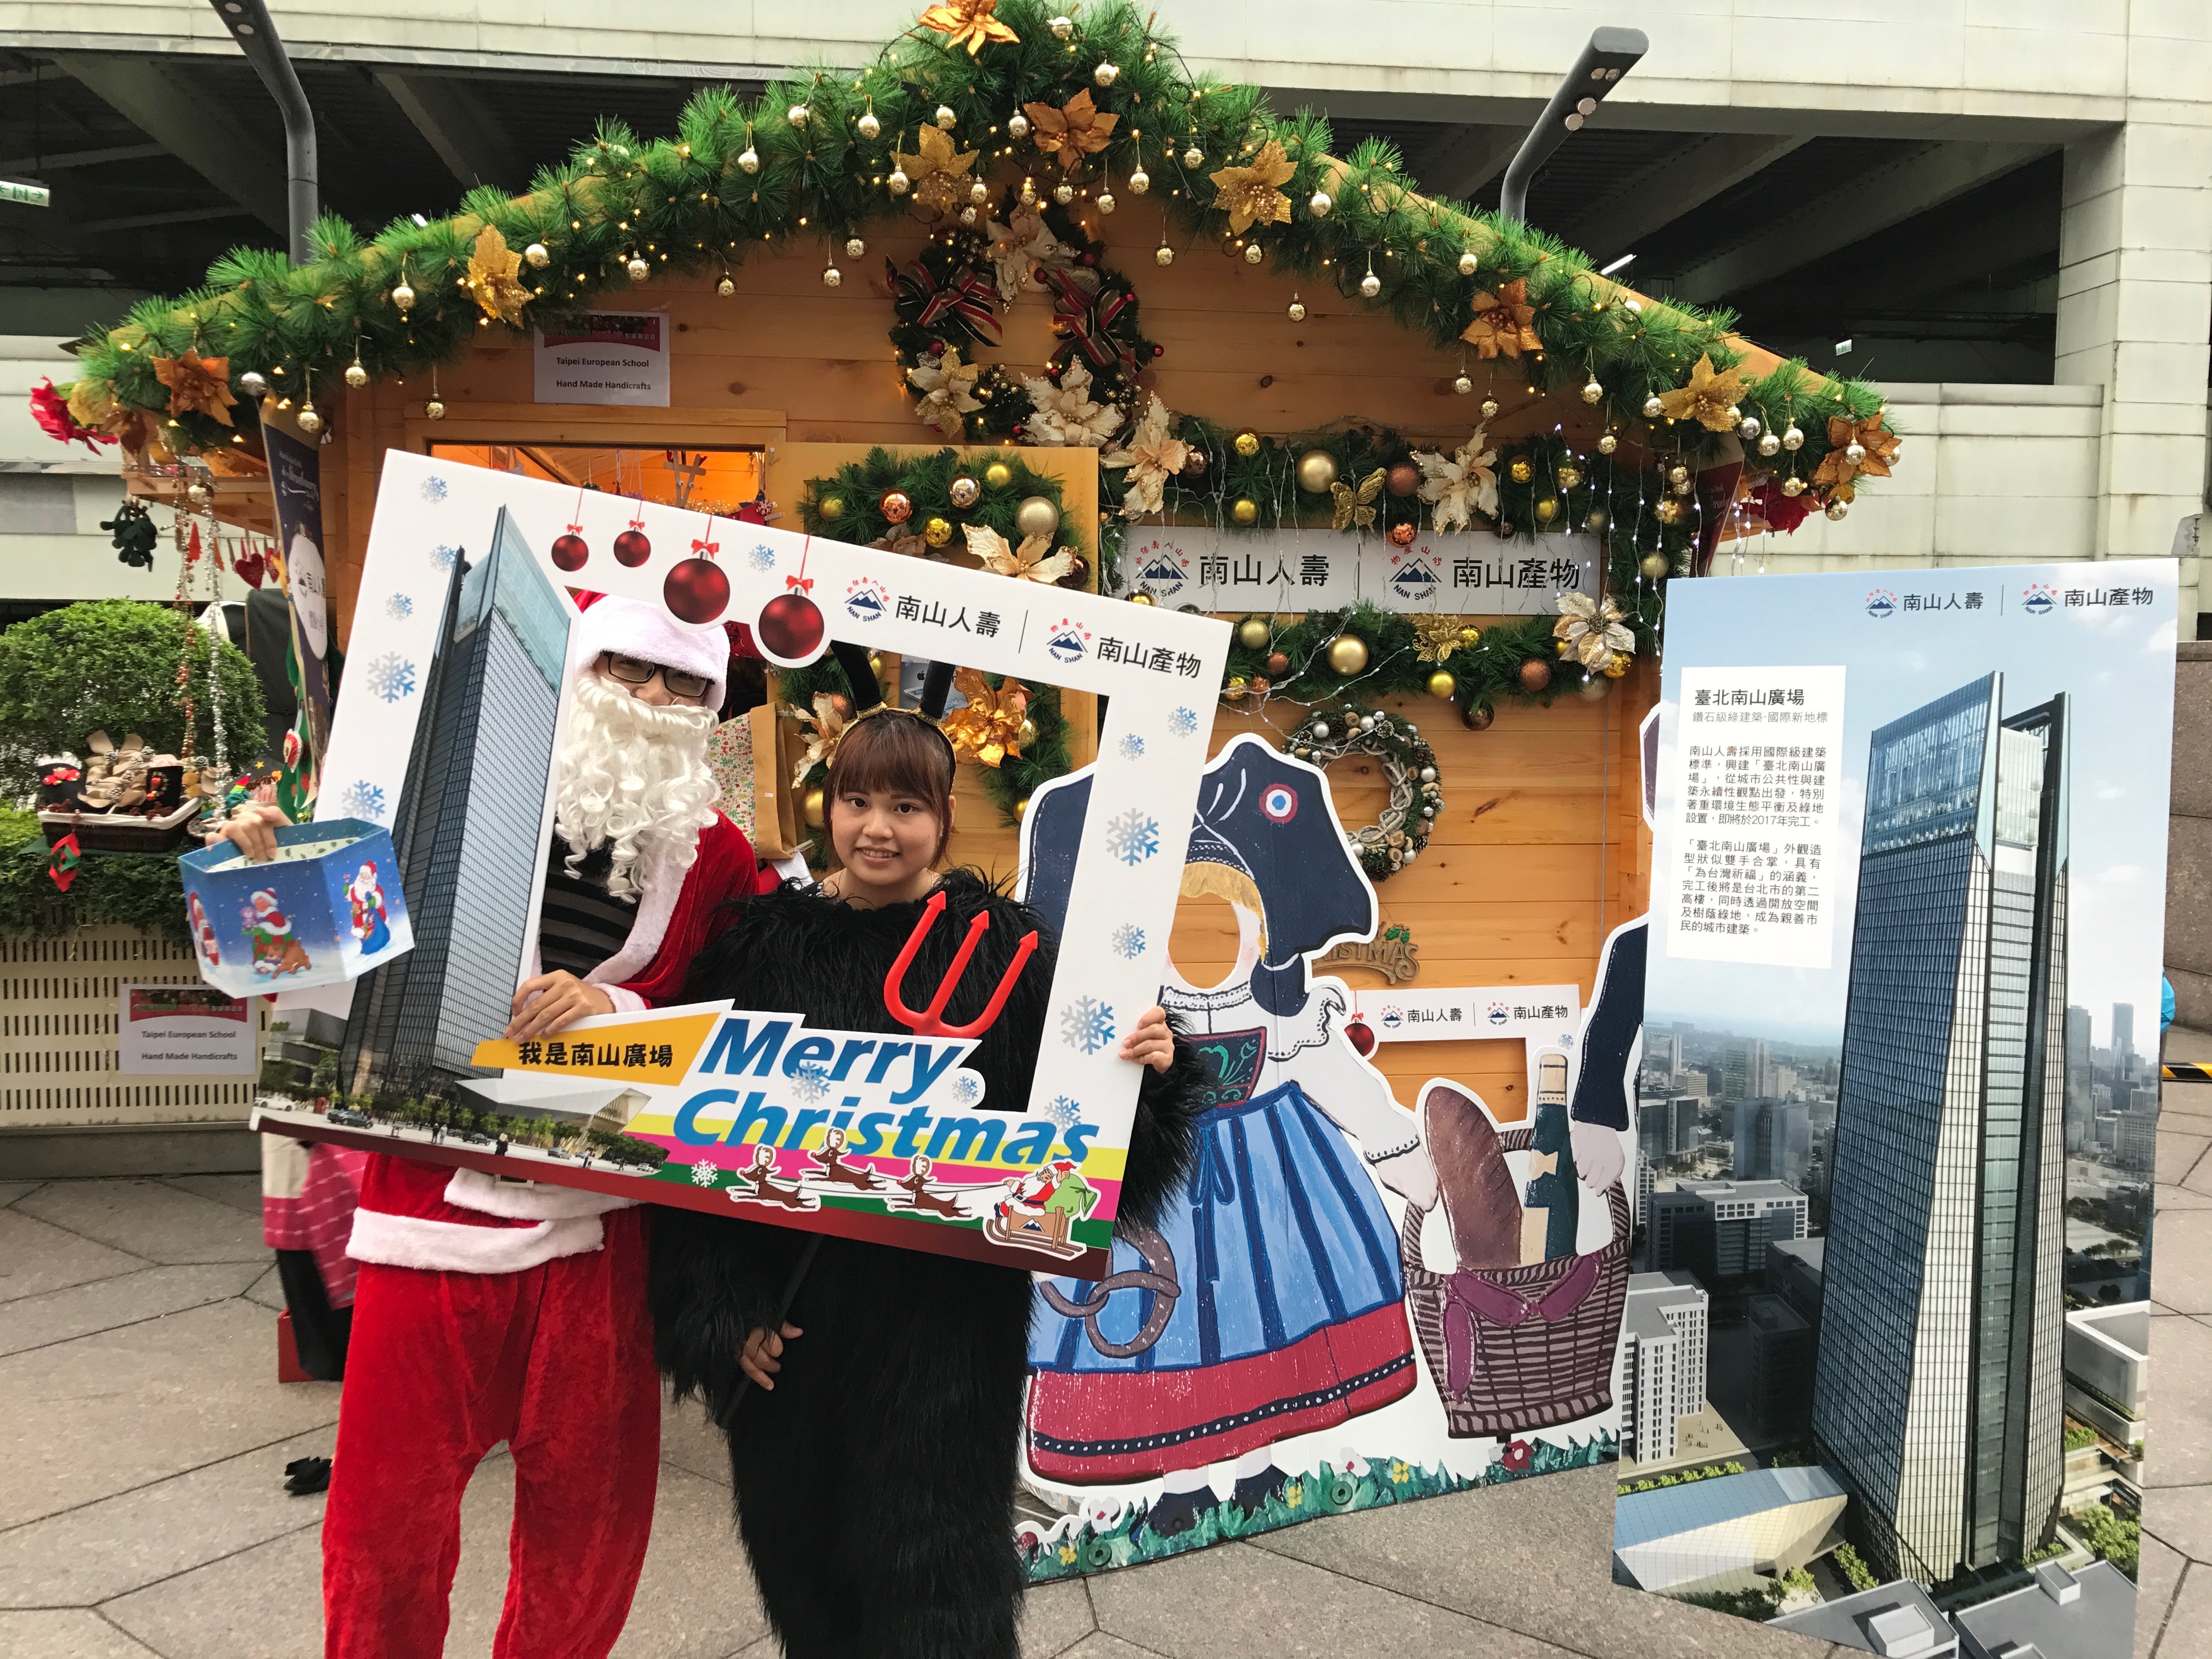 圖說: 南山人壽在「2016台北繽紛耶誕季」現場，精心設置「南山體驗小屋」與民眾同樂。